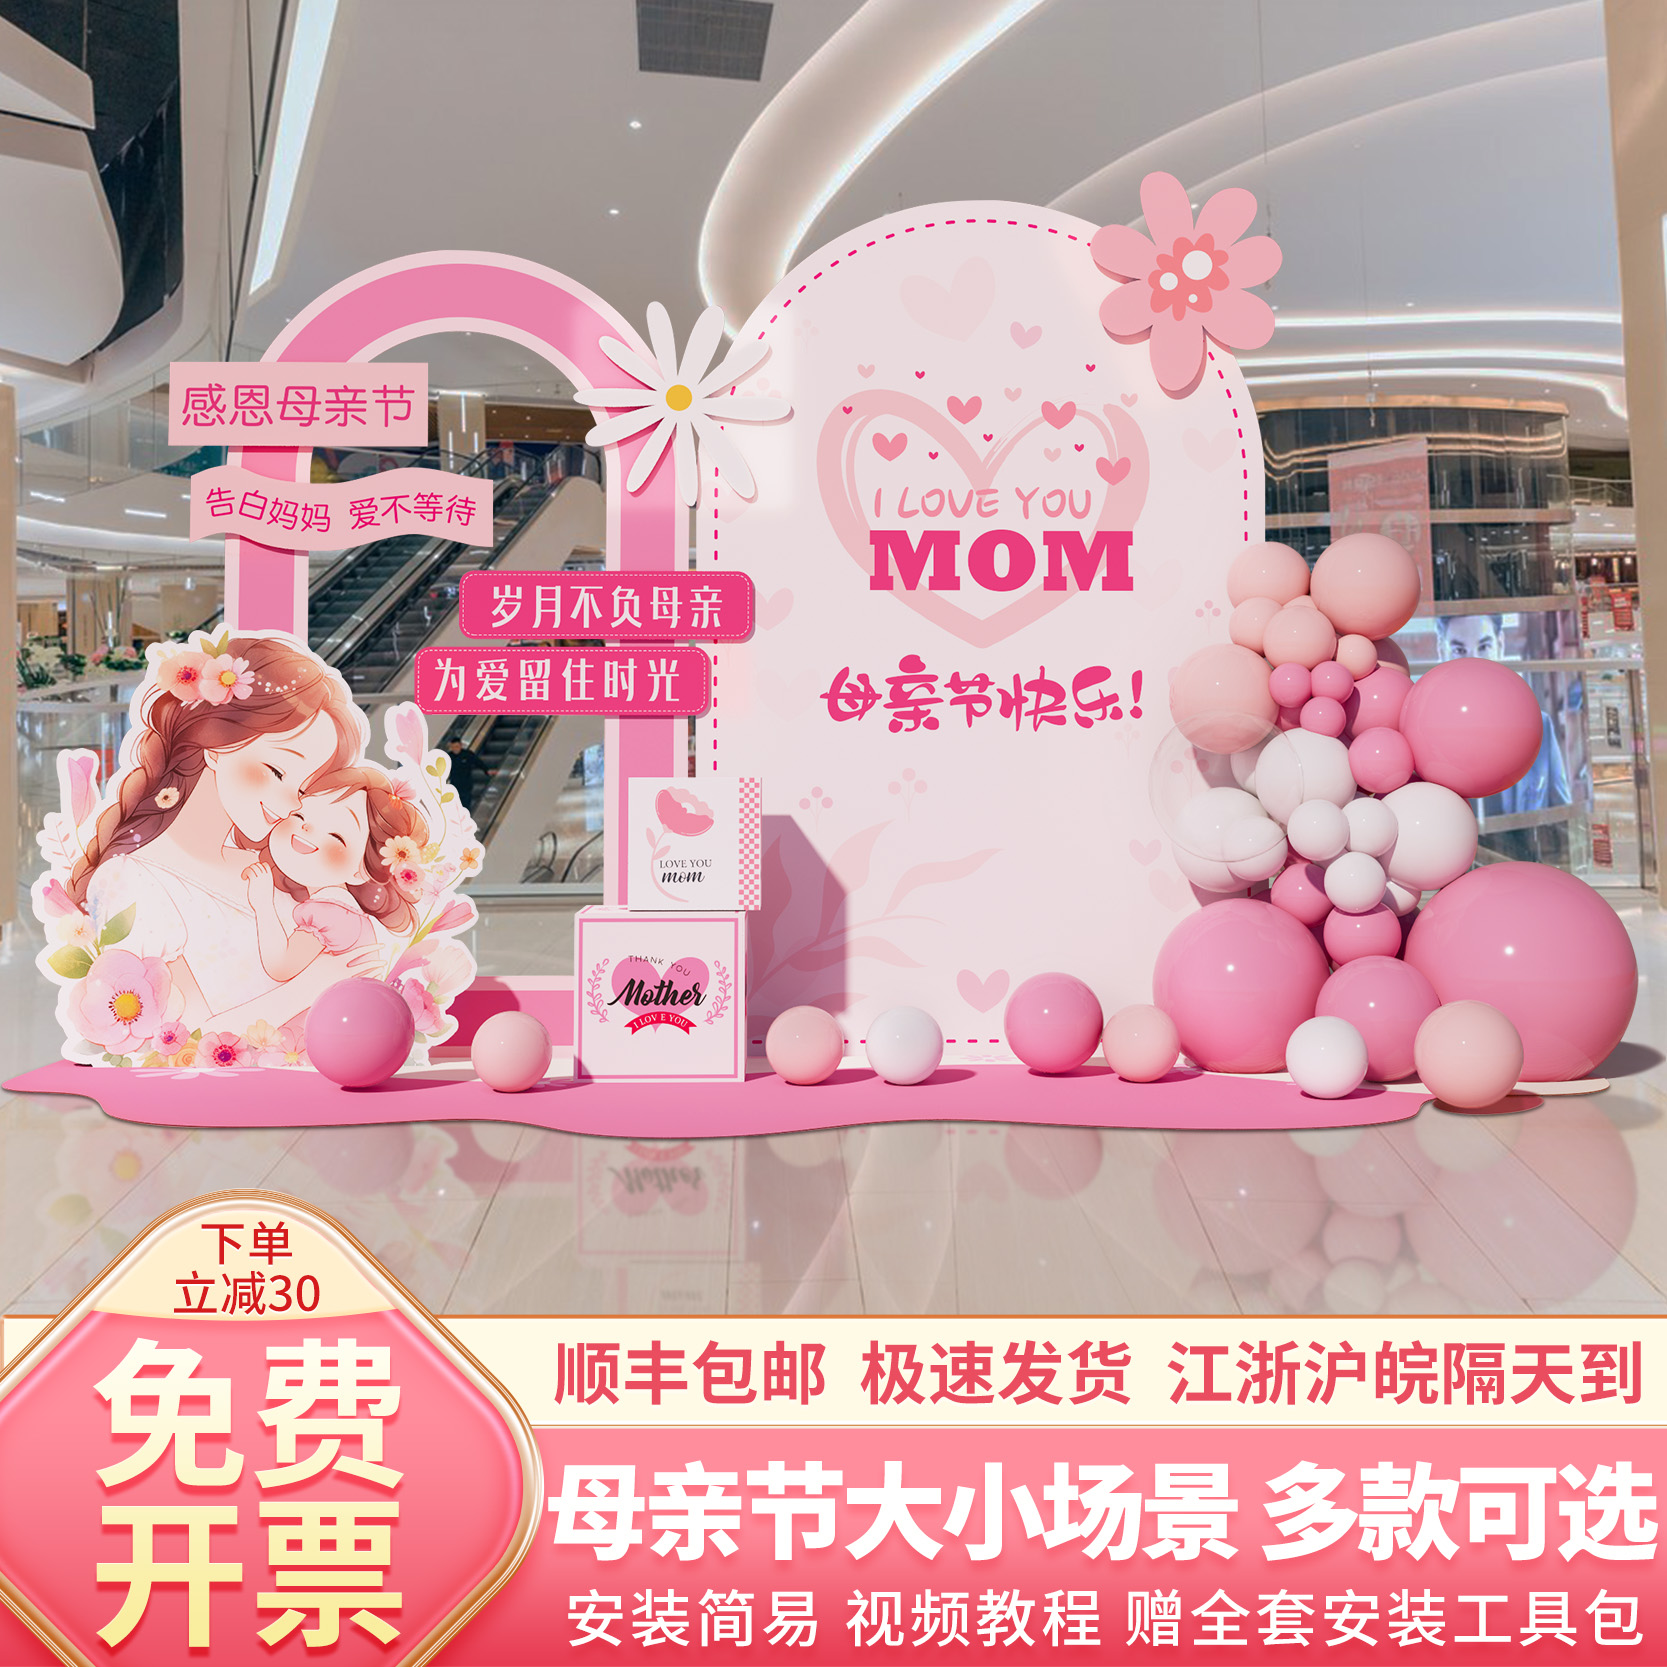 母亲节氛围活动主题装饰商场景布置店铺气球拍照打卡背景墙kt展板